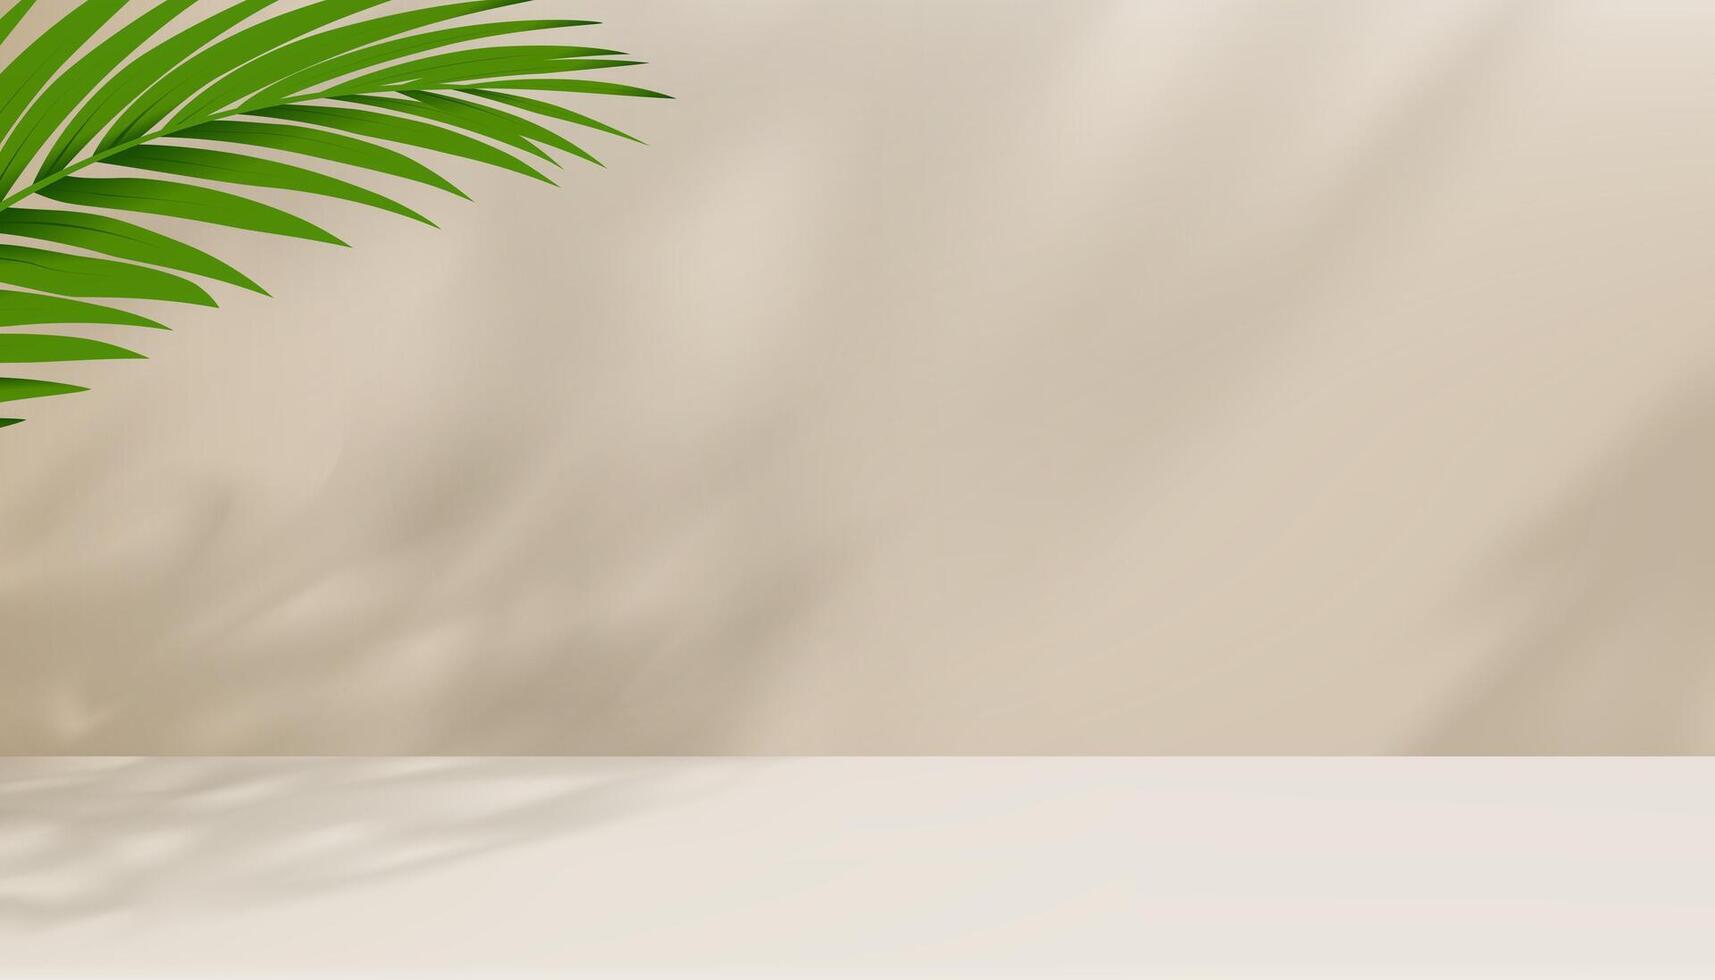 Beige Hintergrund Studio Podium mit Palme Blätter Schatten auf Zement Boden, Kulisse 3d Anzeige Zimmer mit Stand Bühne zum kosmetisch Produkt Präsentation, Verkauf, online Geschäft im Frühling Sommer vektor